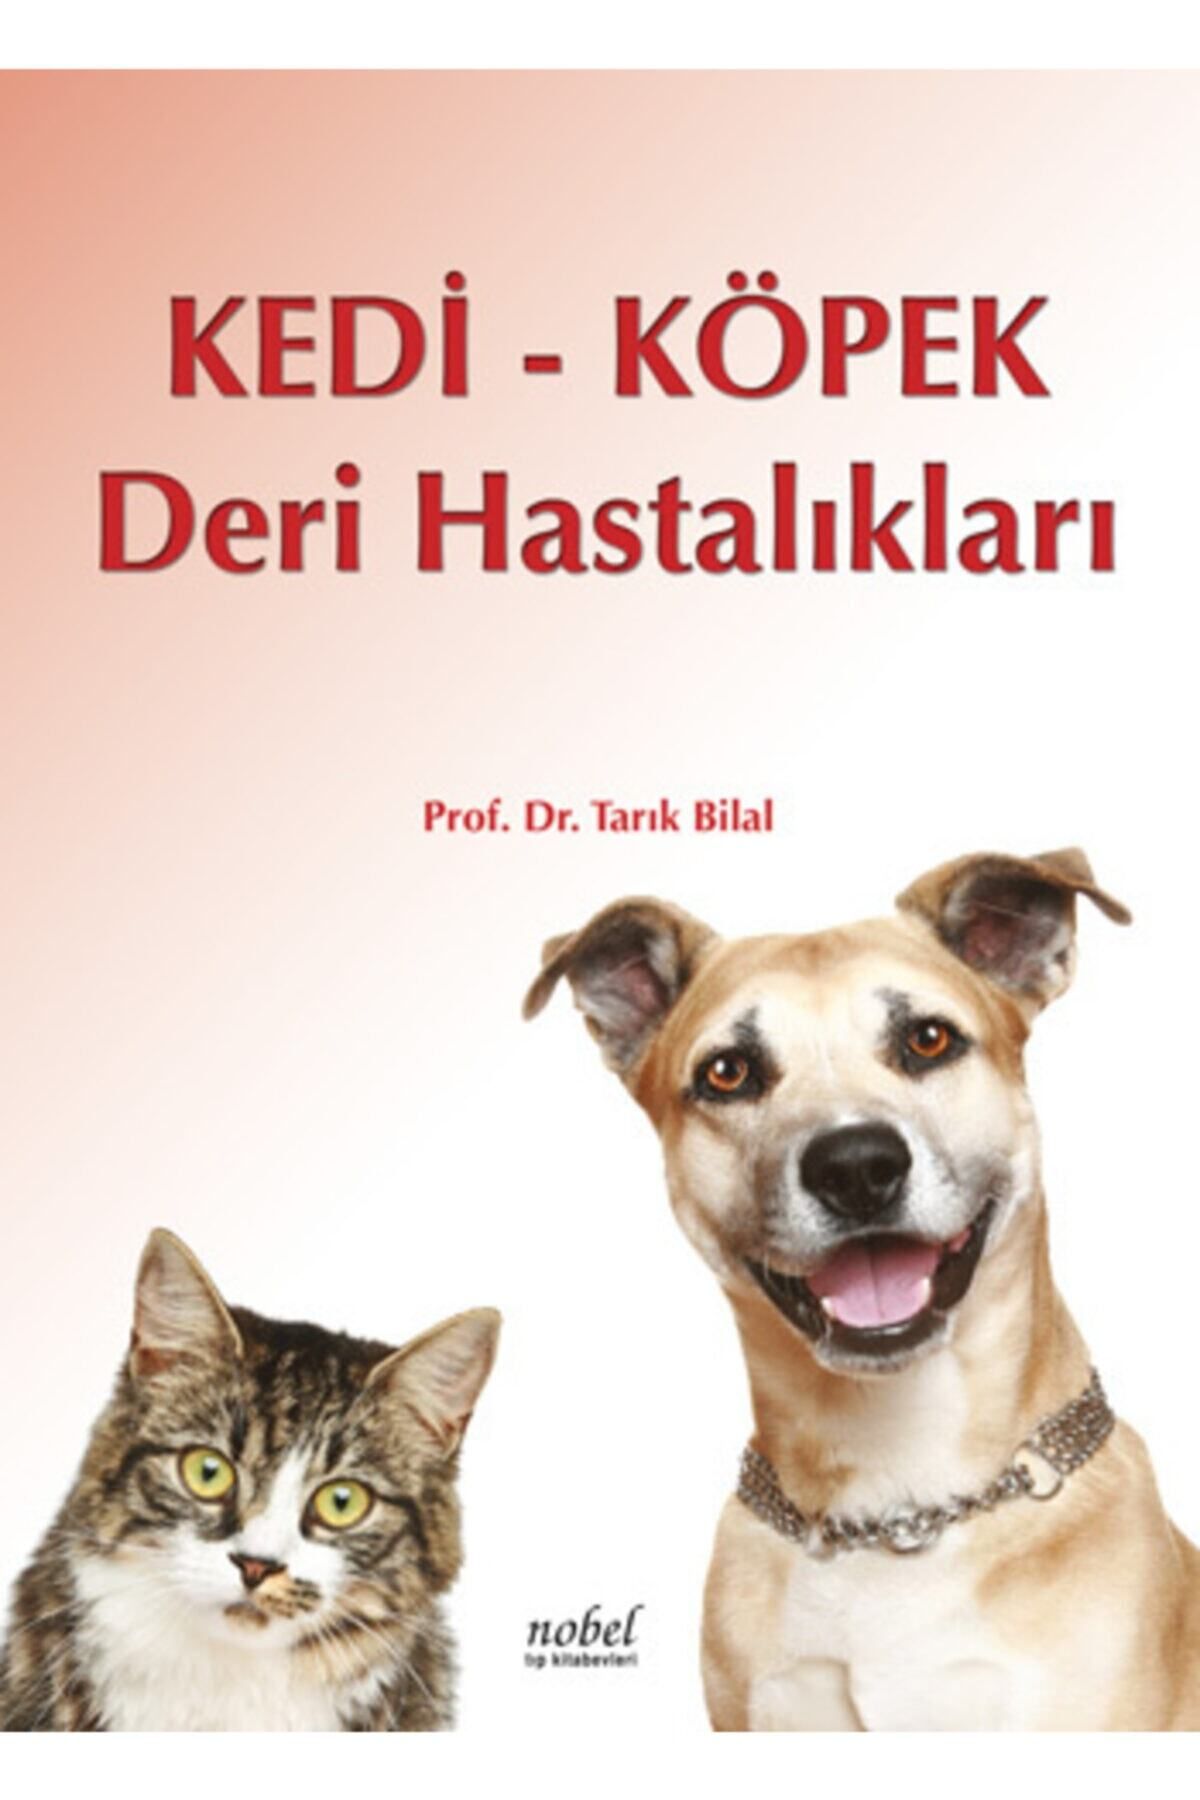 Nobel Kedi Köpek Deri Hastalıkları Prof. Dr. Tarık Bilal